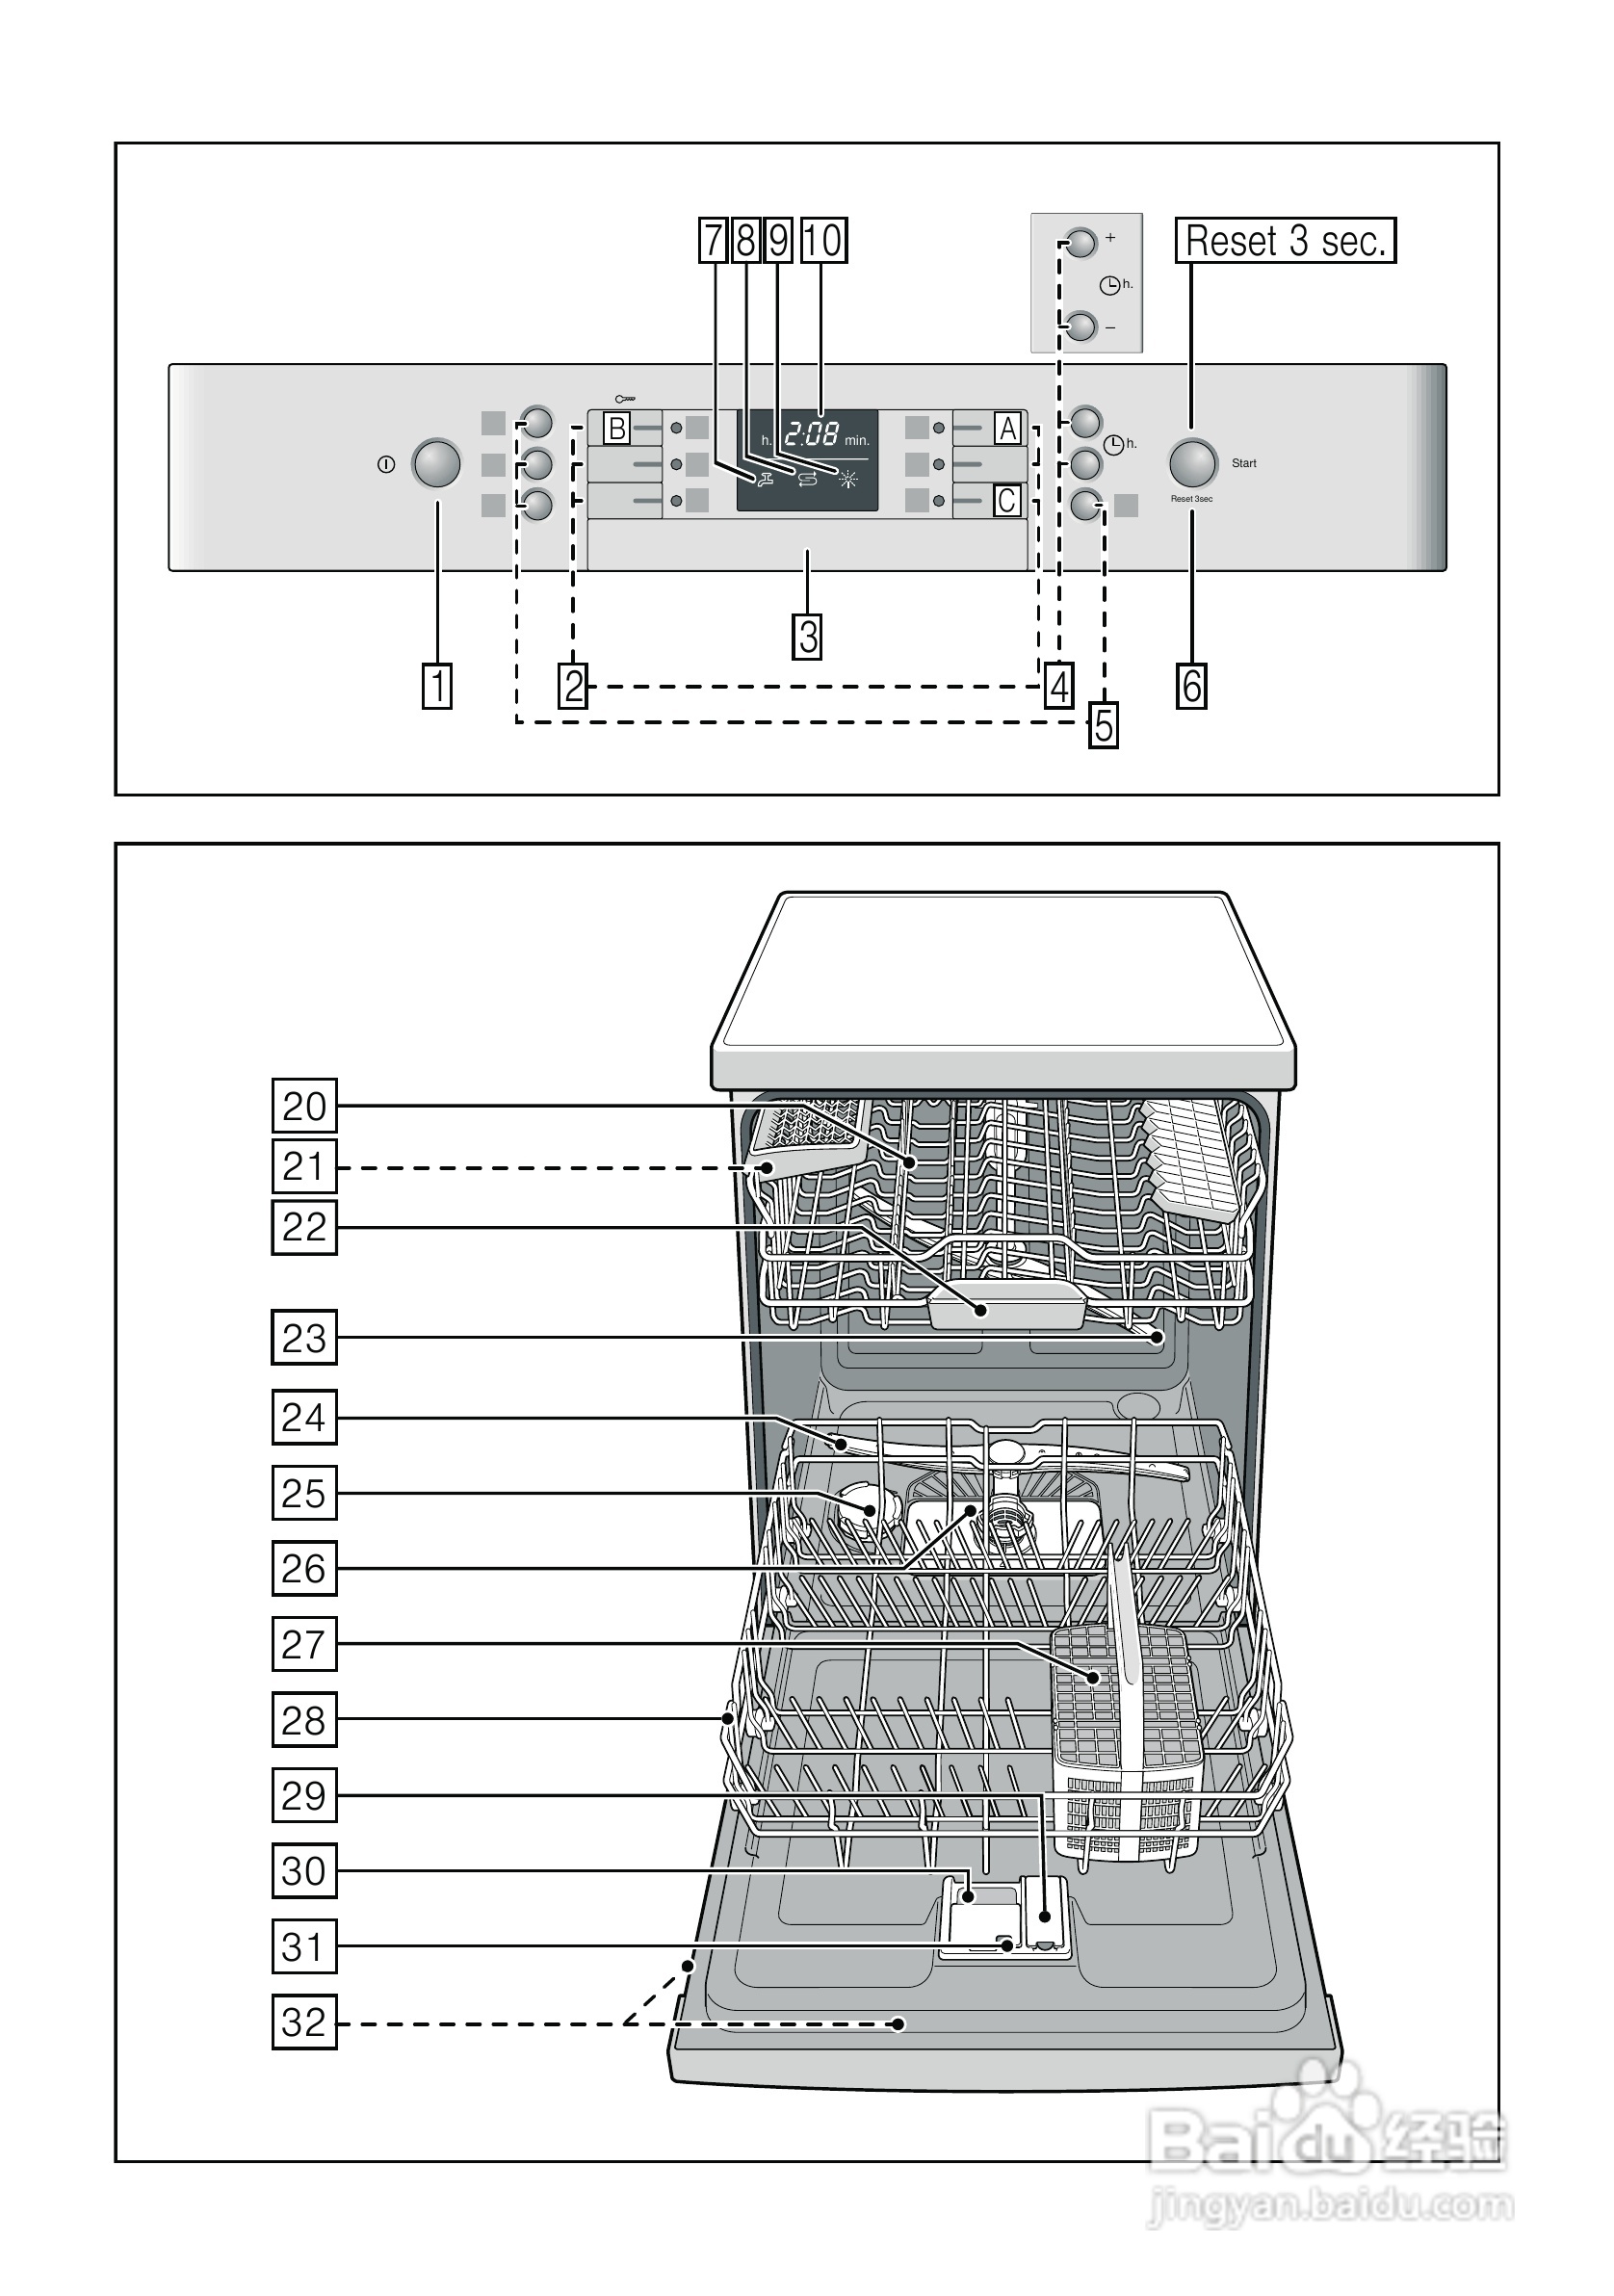 博世smi40m35eu大容量系列嵌入式洗碗机使用说明书:[1